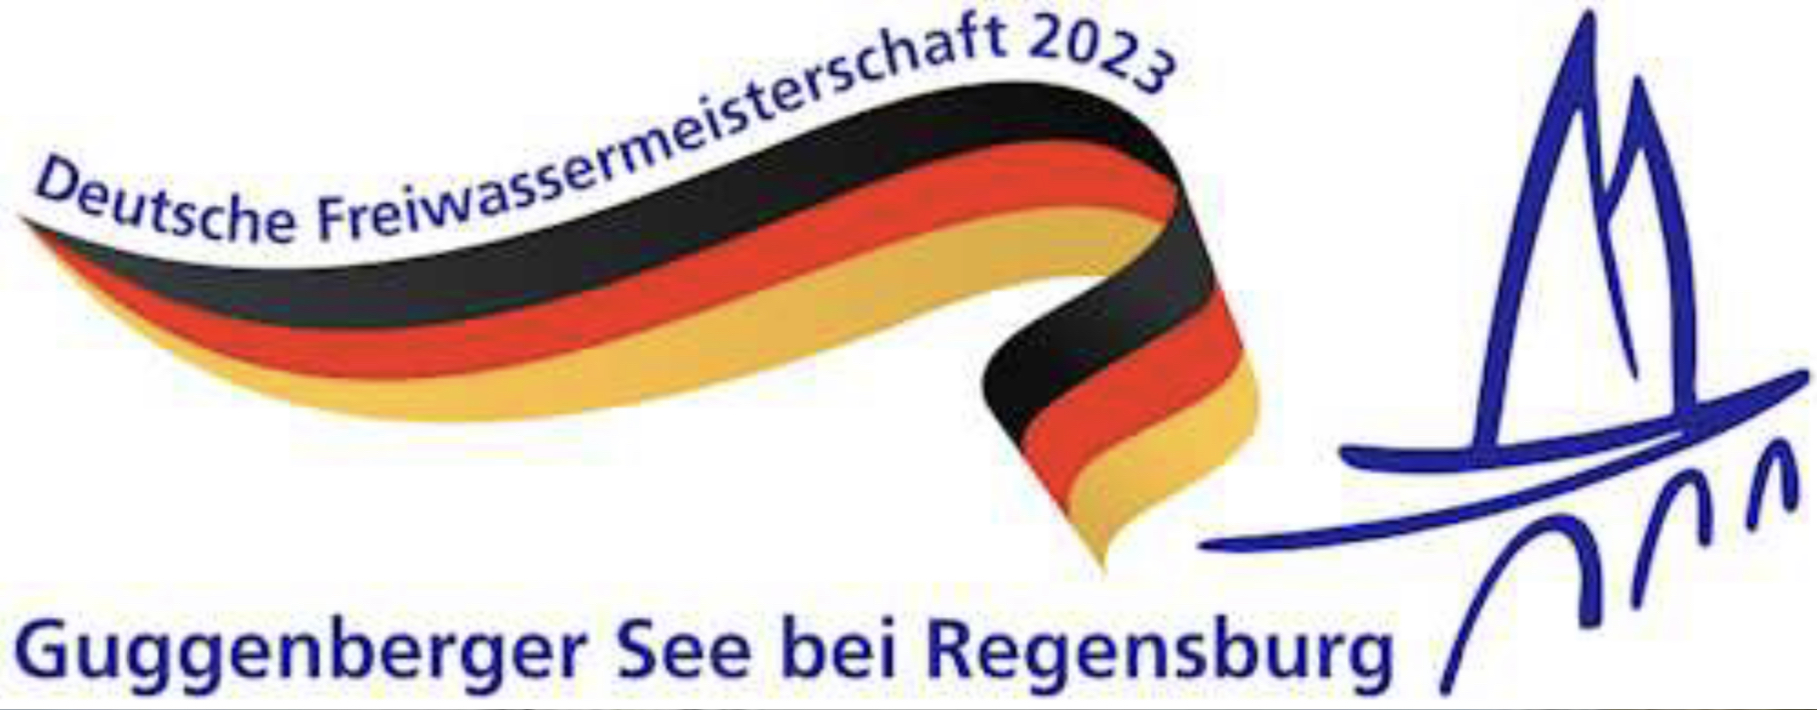 Deutsche Freiwassermeisterschaften 2023 Regensburg